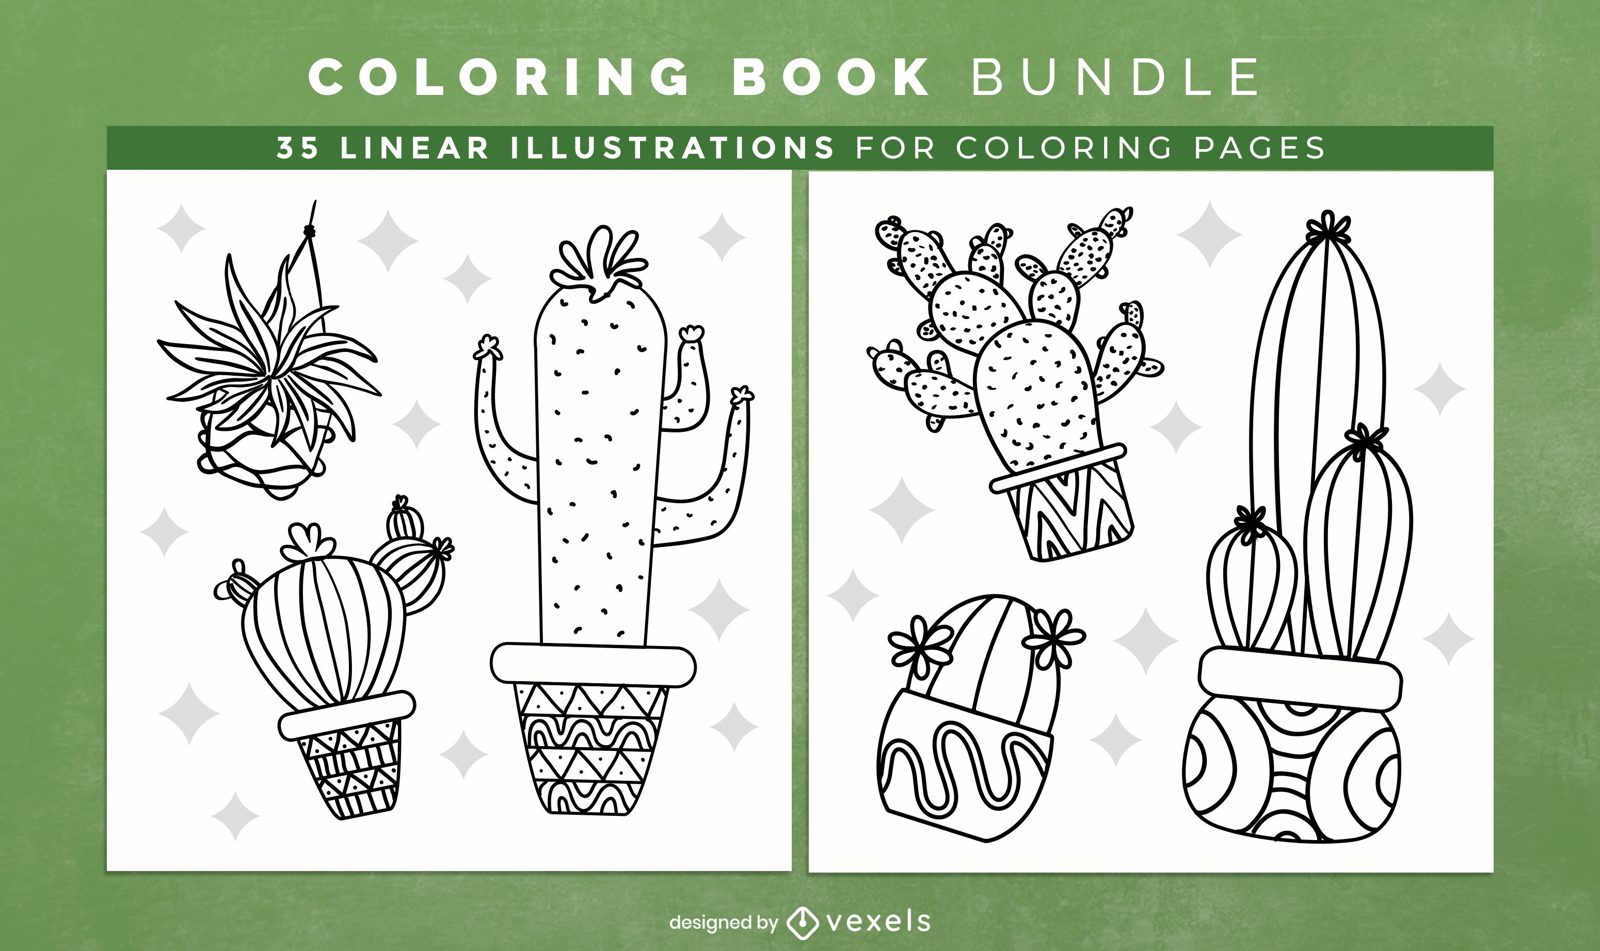 Dise?o de p?ginas de libros para colorear de cactus y plantas.